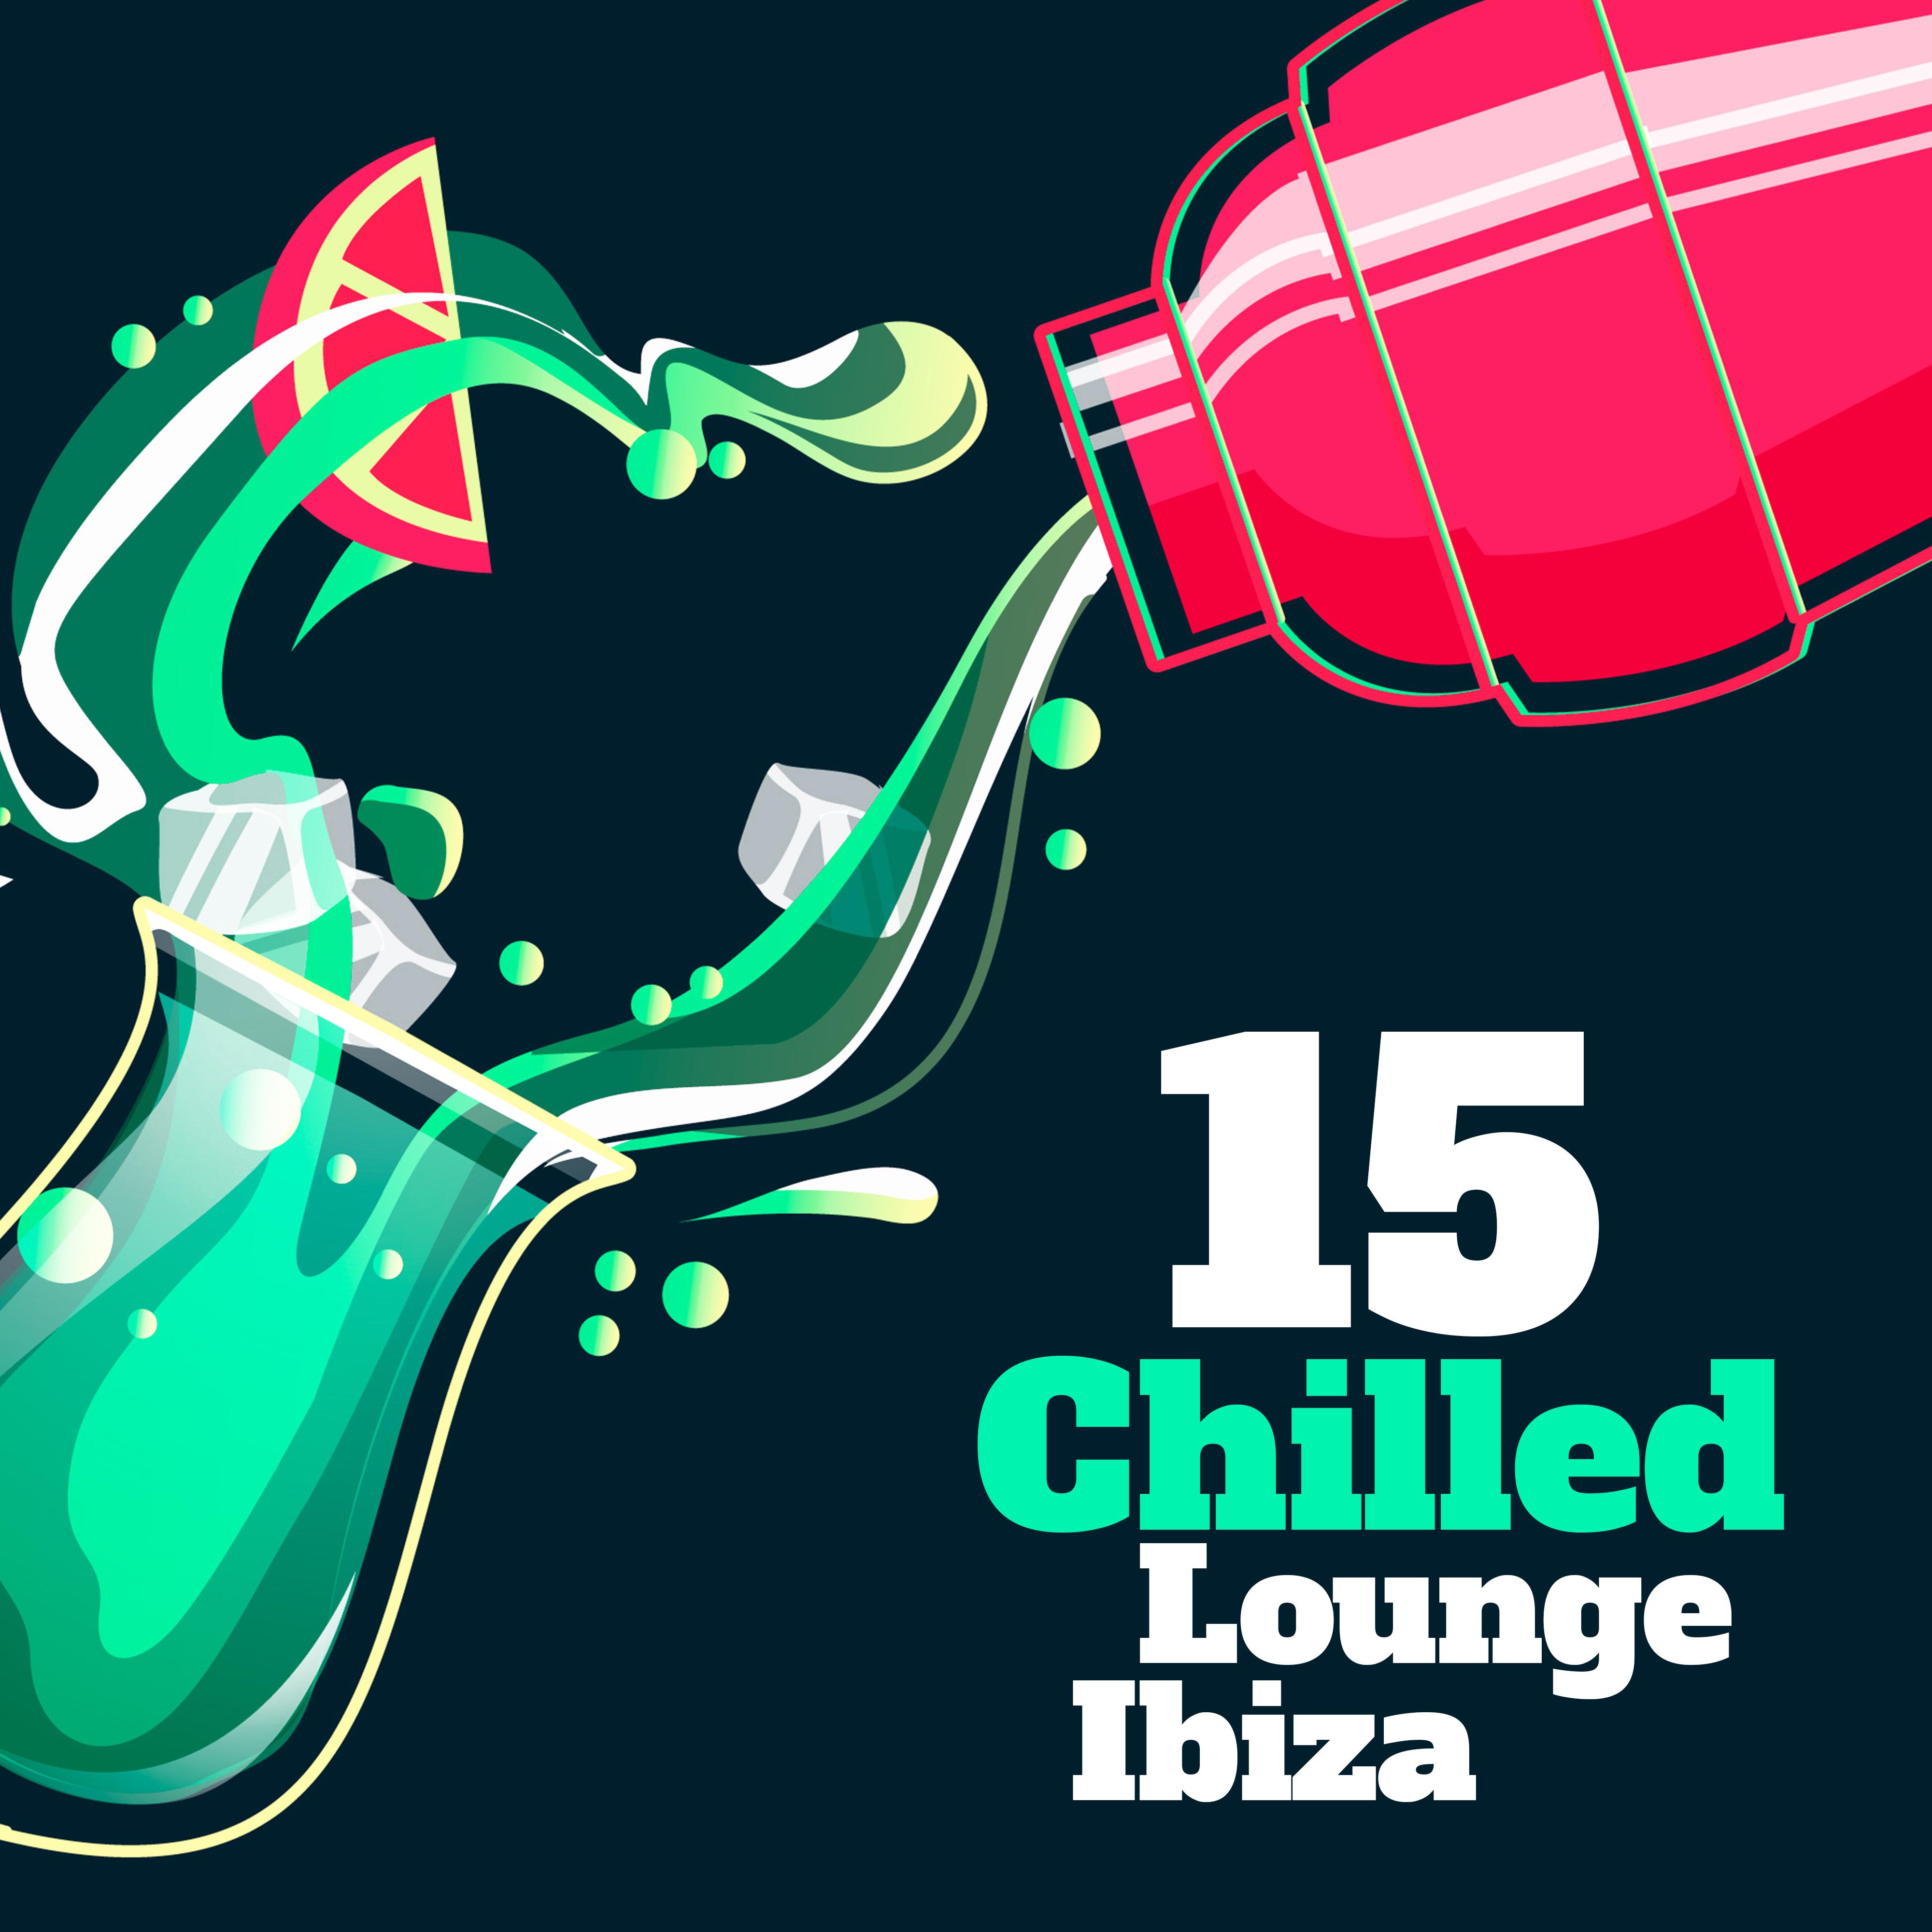 15 Chilled Lounge Ibiza